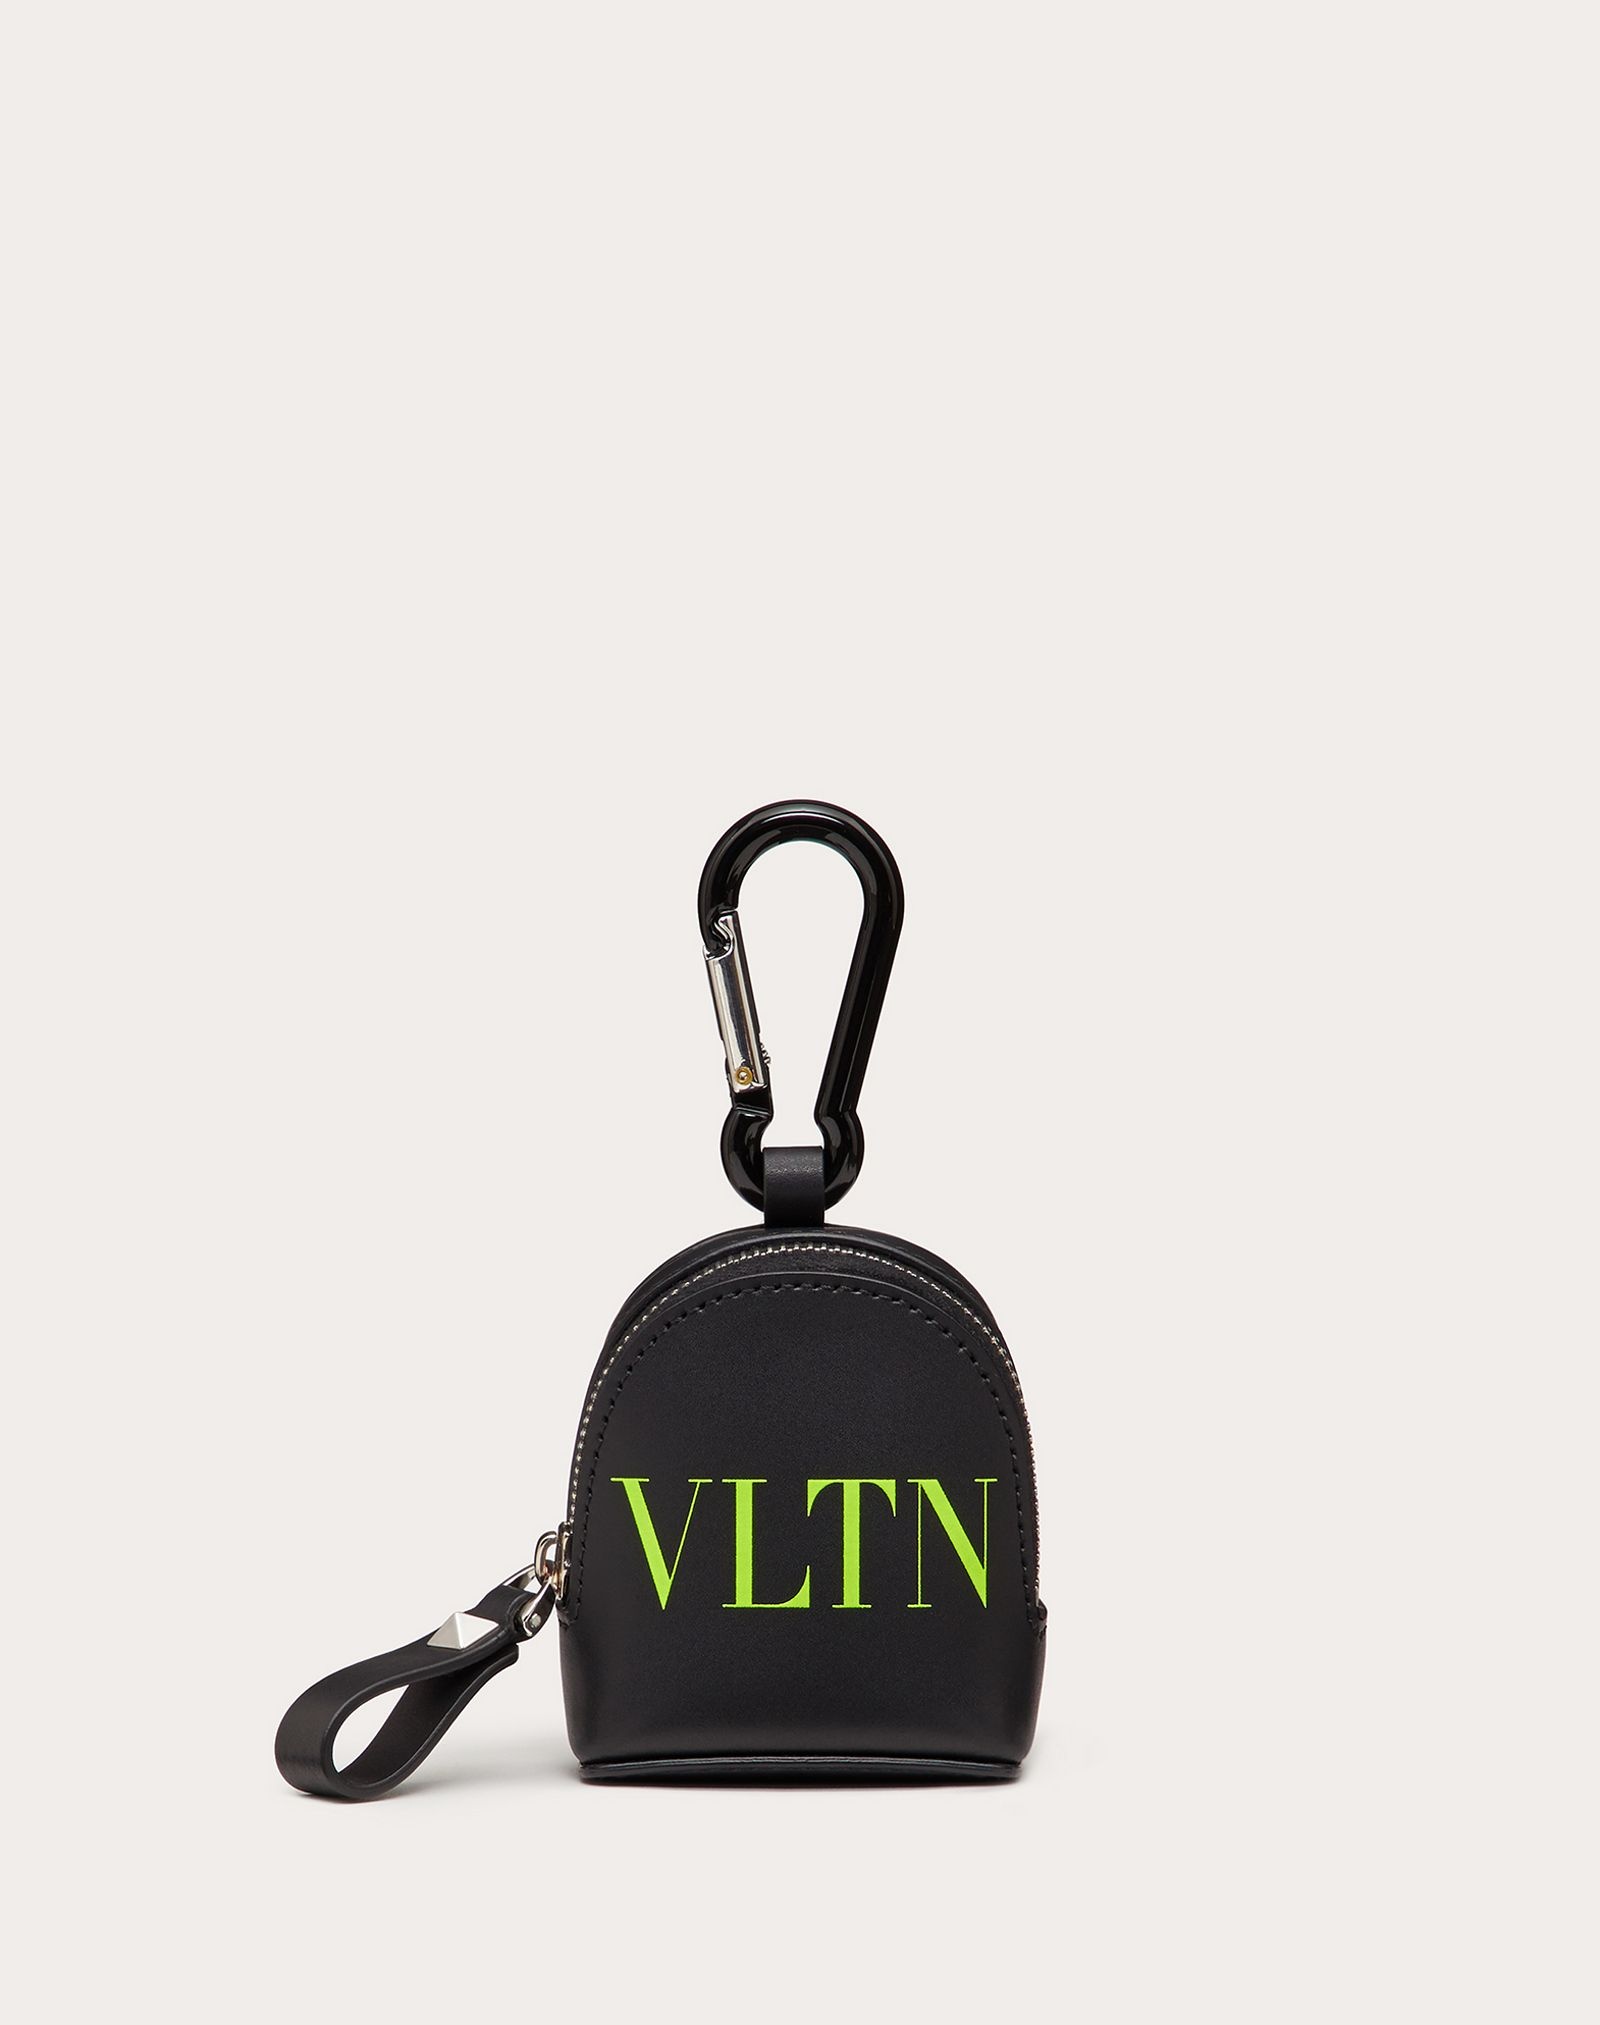 VLTN Backpack Charm - 1